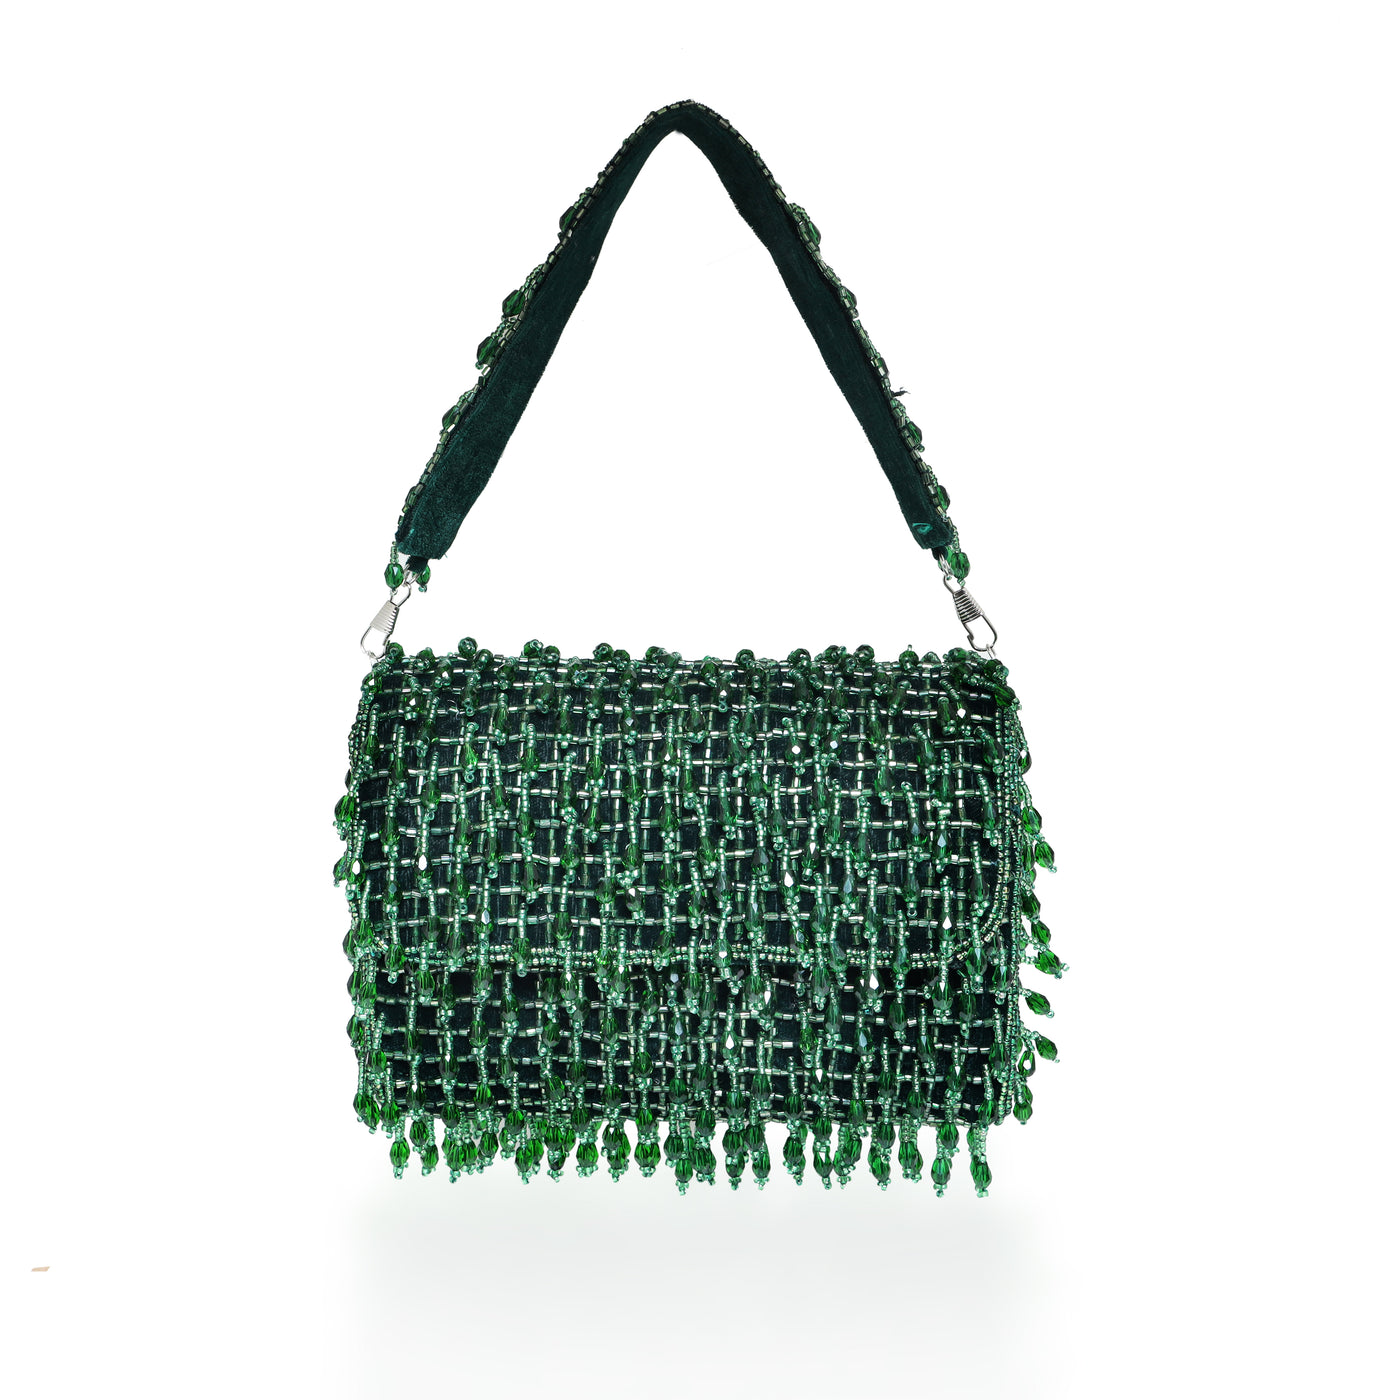 The Green Desire Bag